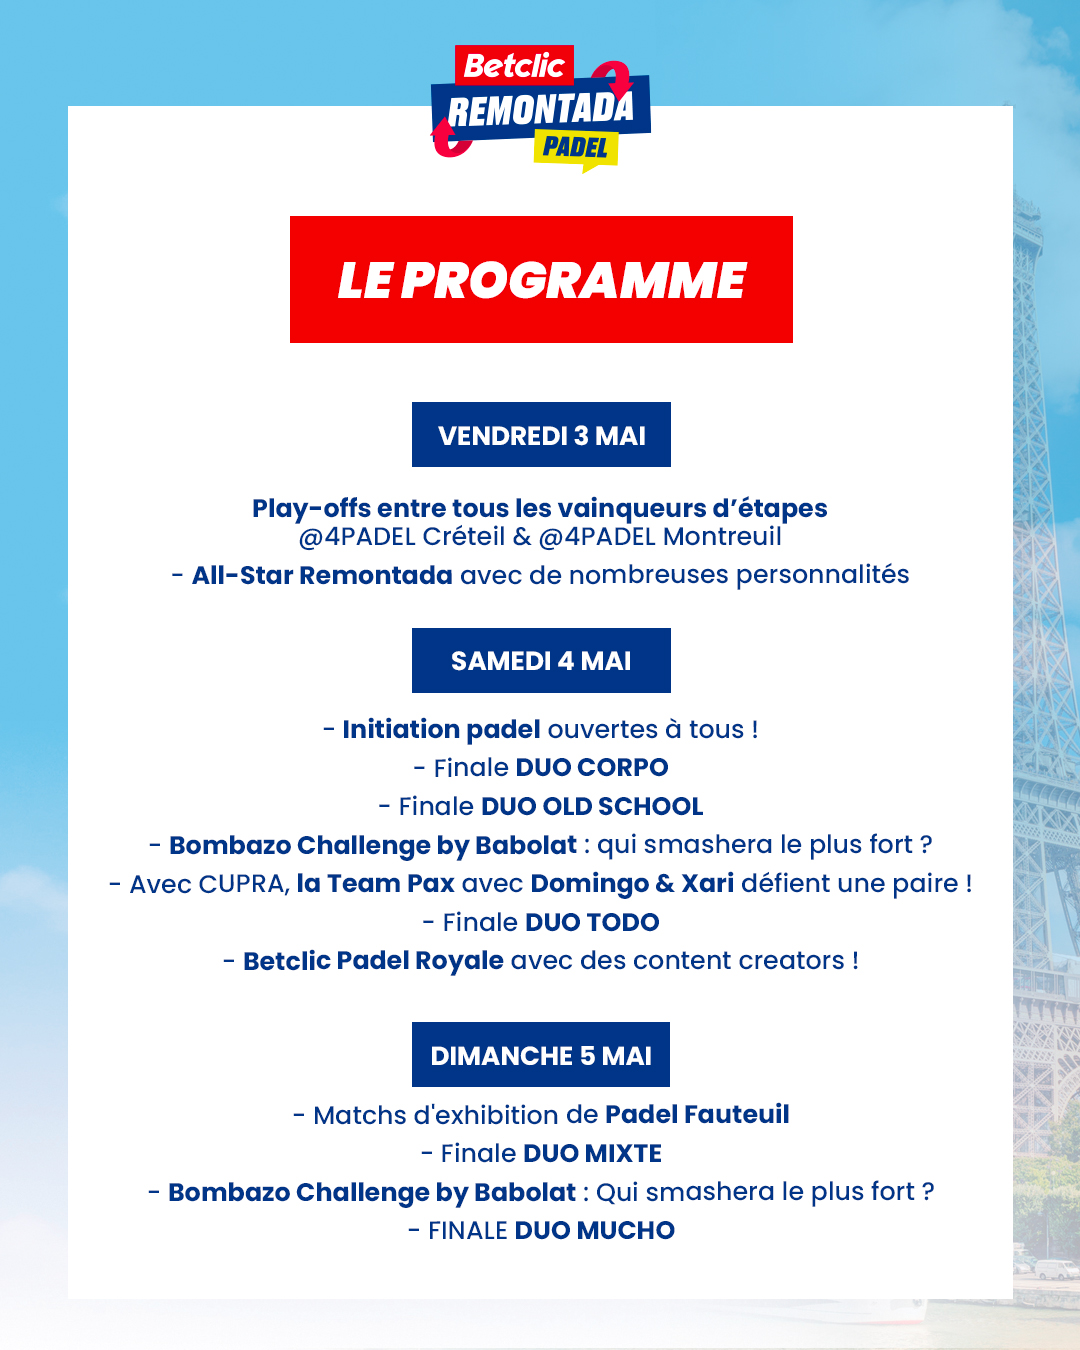 Programma Betclic Remontada Torre Eiffel